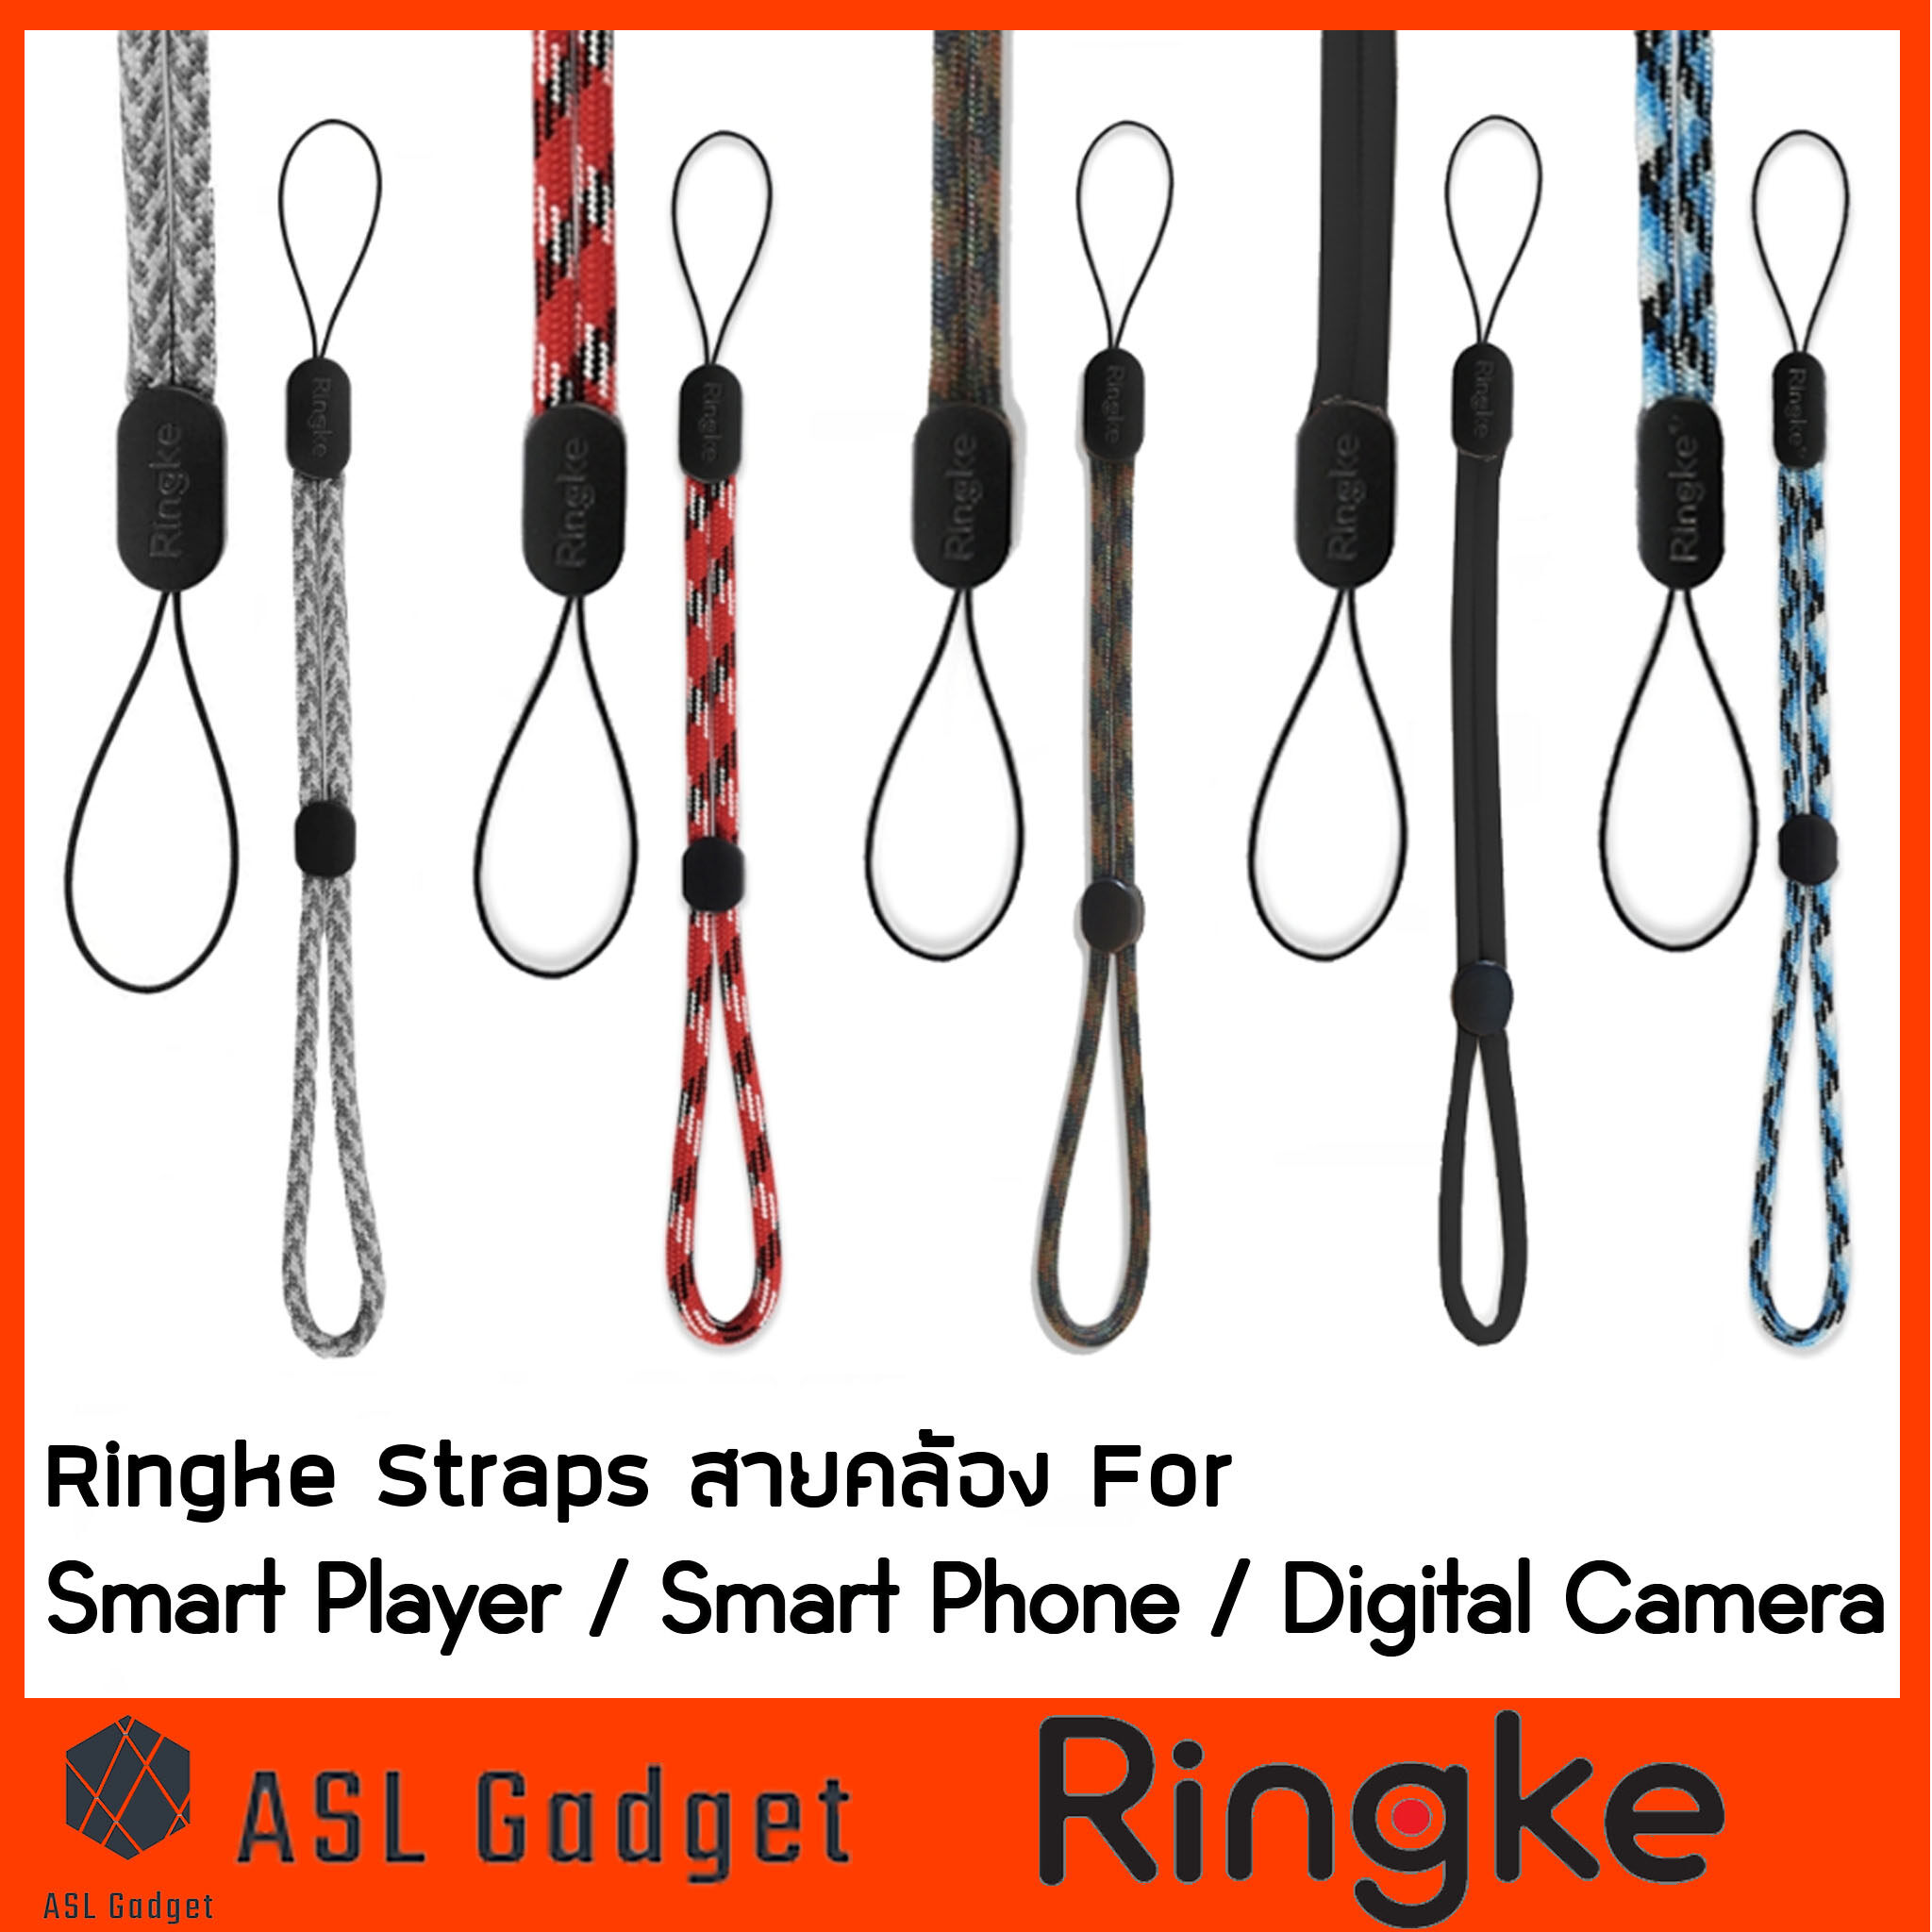 สายคล้อง Ringke Straps For Smart Player / Smart Phone / Digital Camera มีตัวล็อค ปรับระดับได้ สีสันสวยงาม